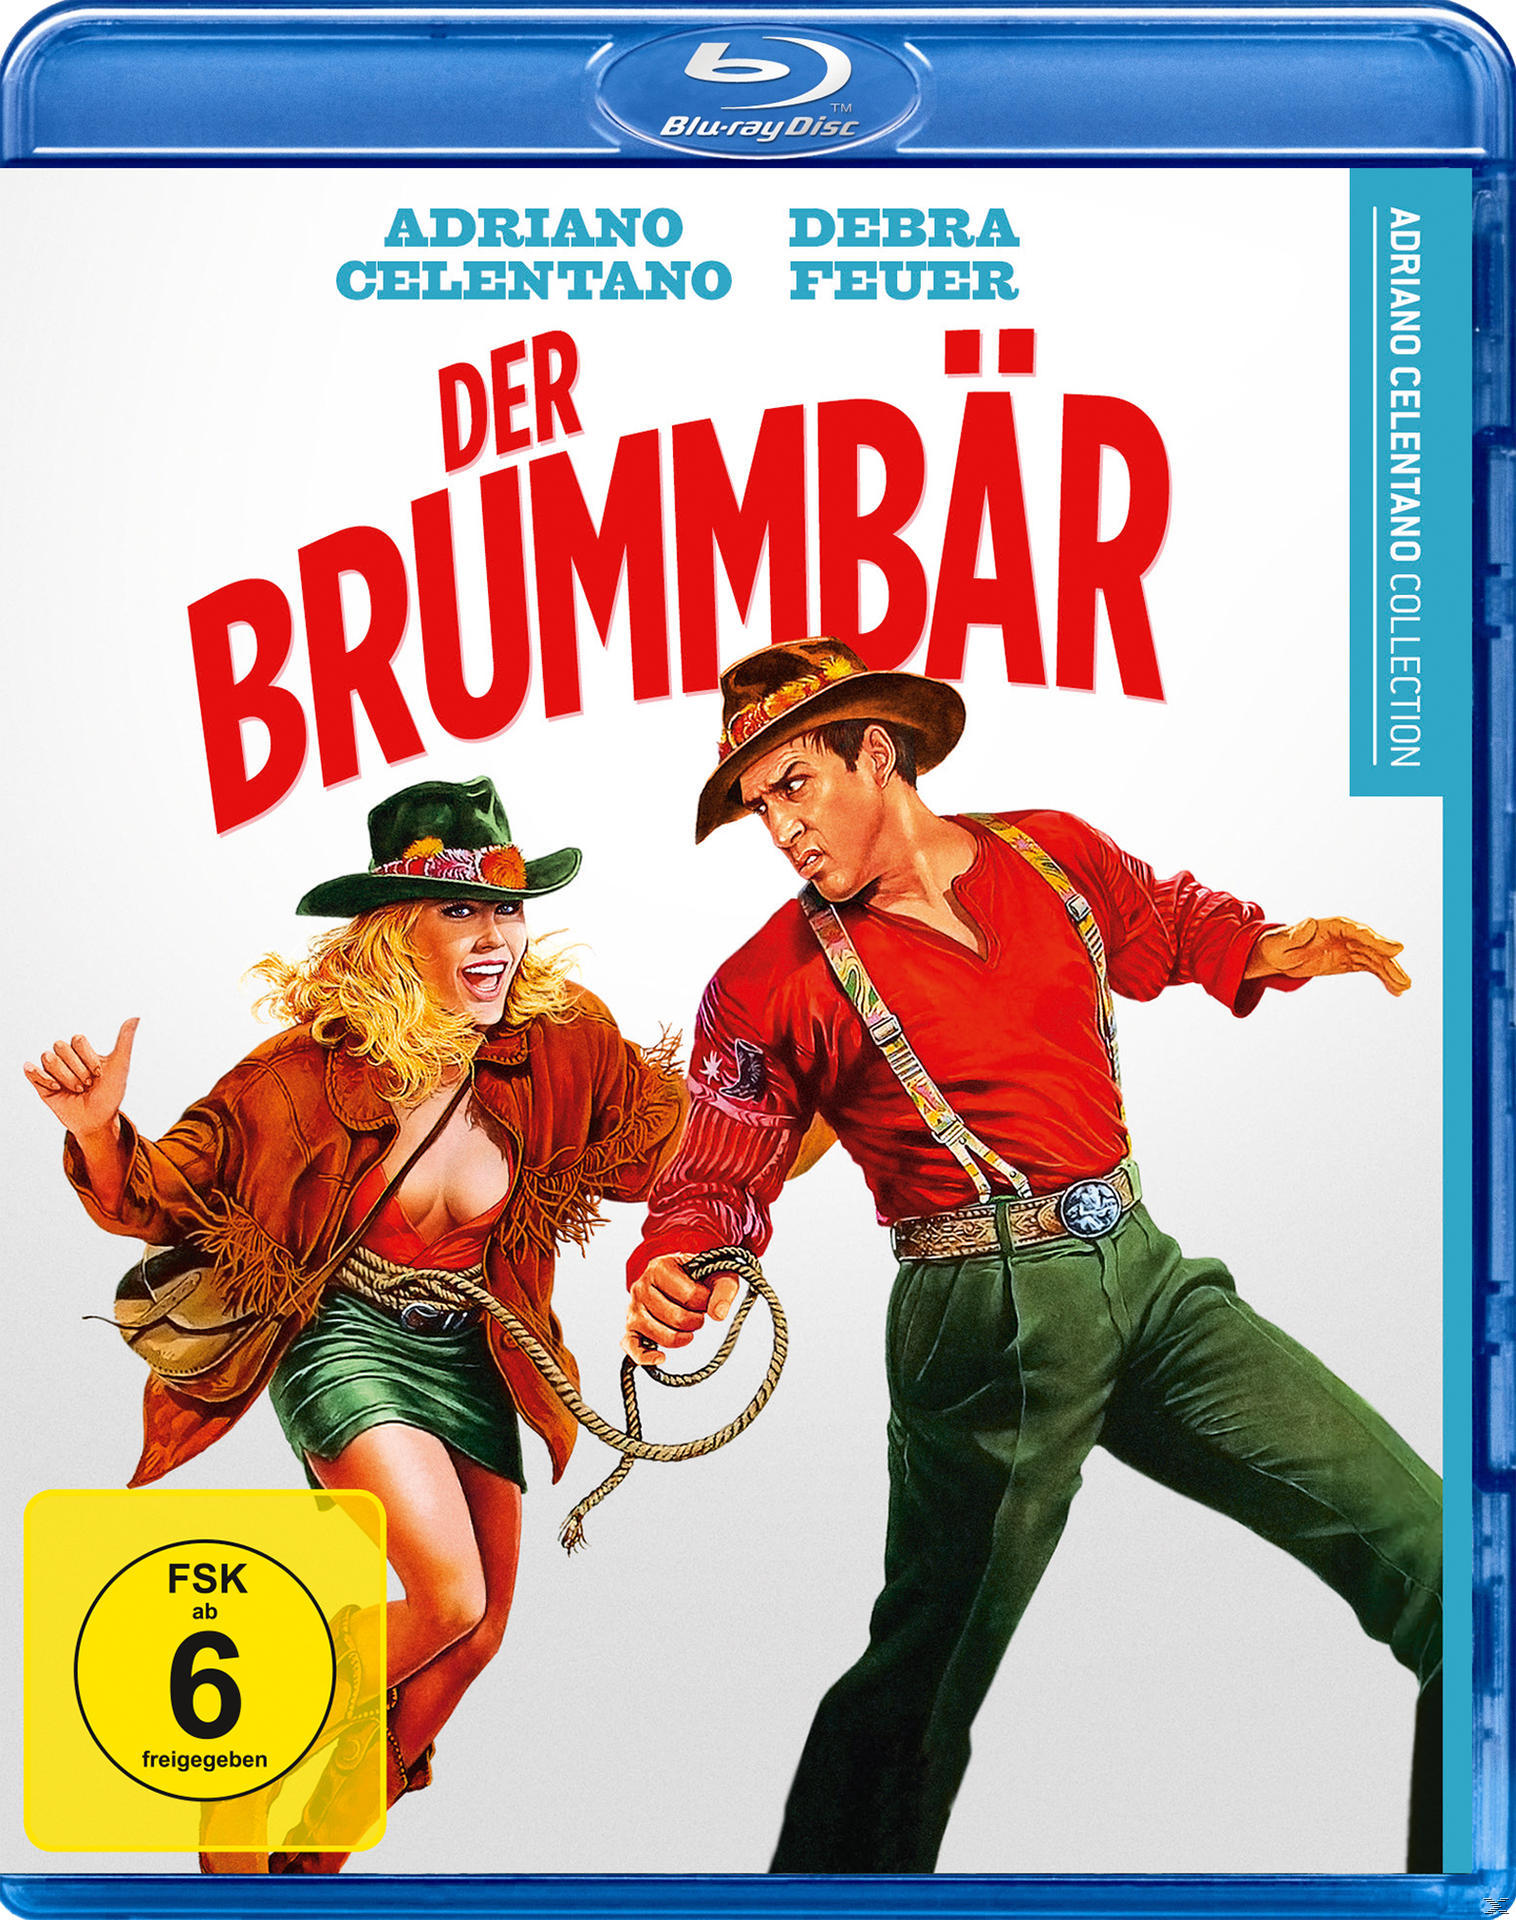 Blu-ray Brummbär Der